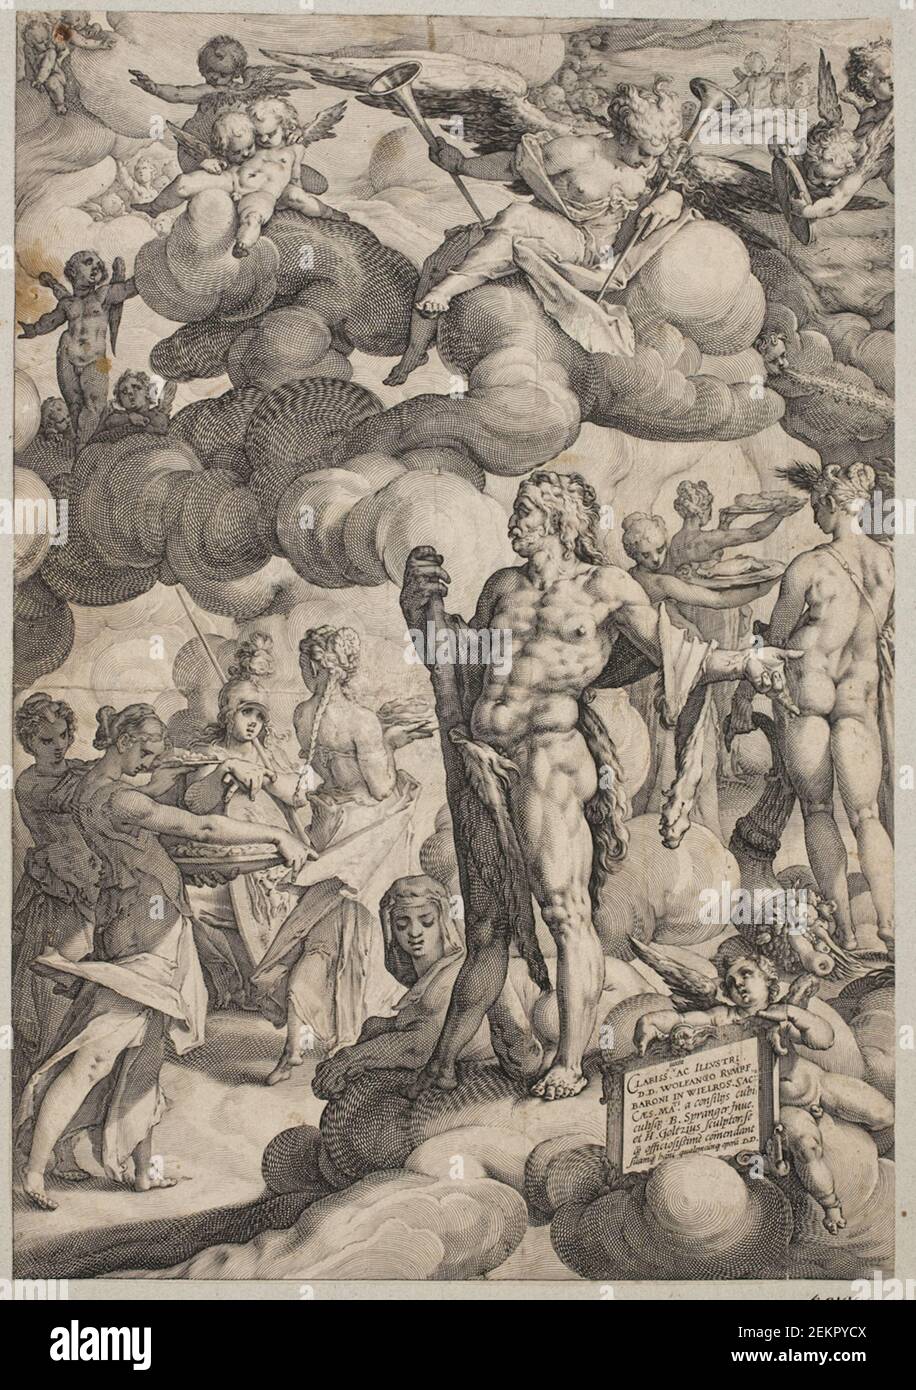 Hendrick Goltzius (1558-1617); Bartholomeus rides (1546-1611), amor and psyches' wedding, 1587 Stock Photo